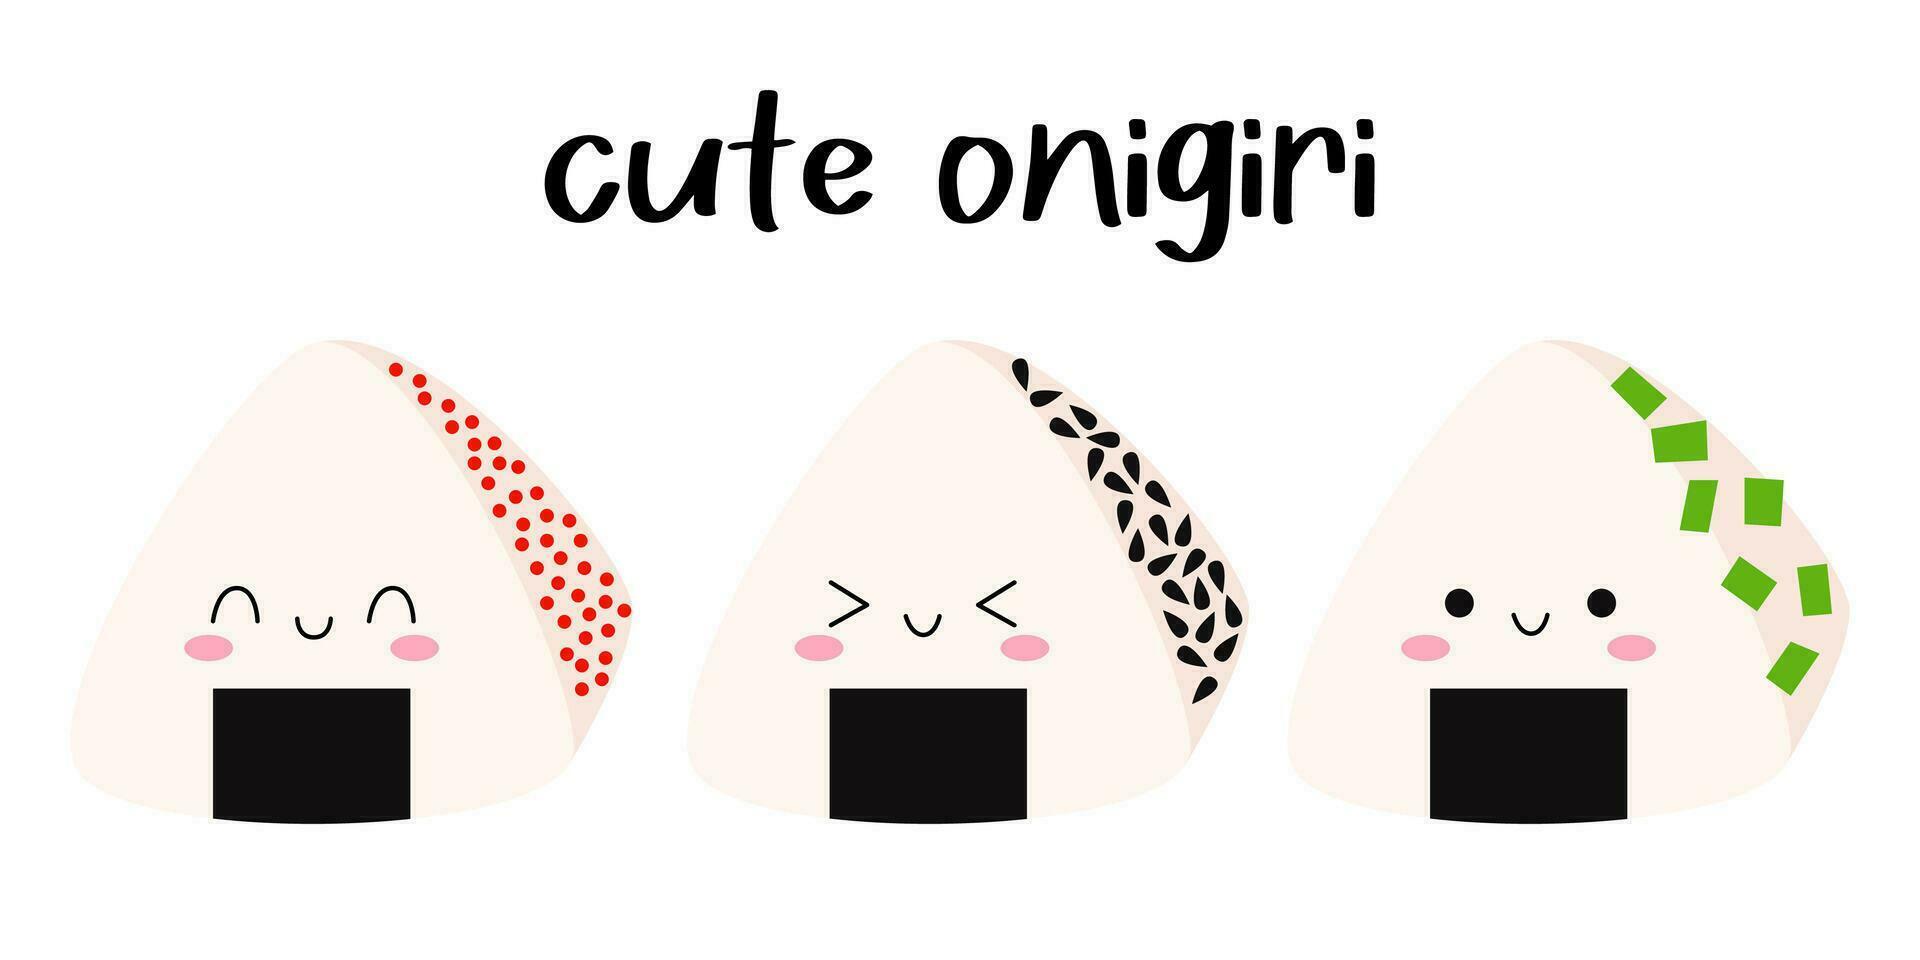 conjunto linda onigiri con sonriente cara y rosado las mejillas. kawaii onigiri japonés tradicional cocina platos. vector dibujos animados plano ilustración.